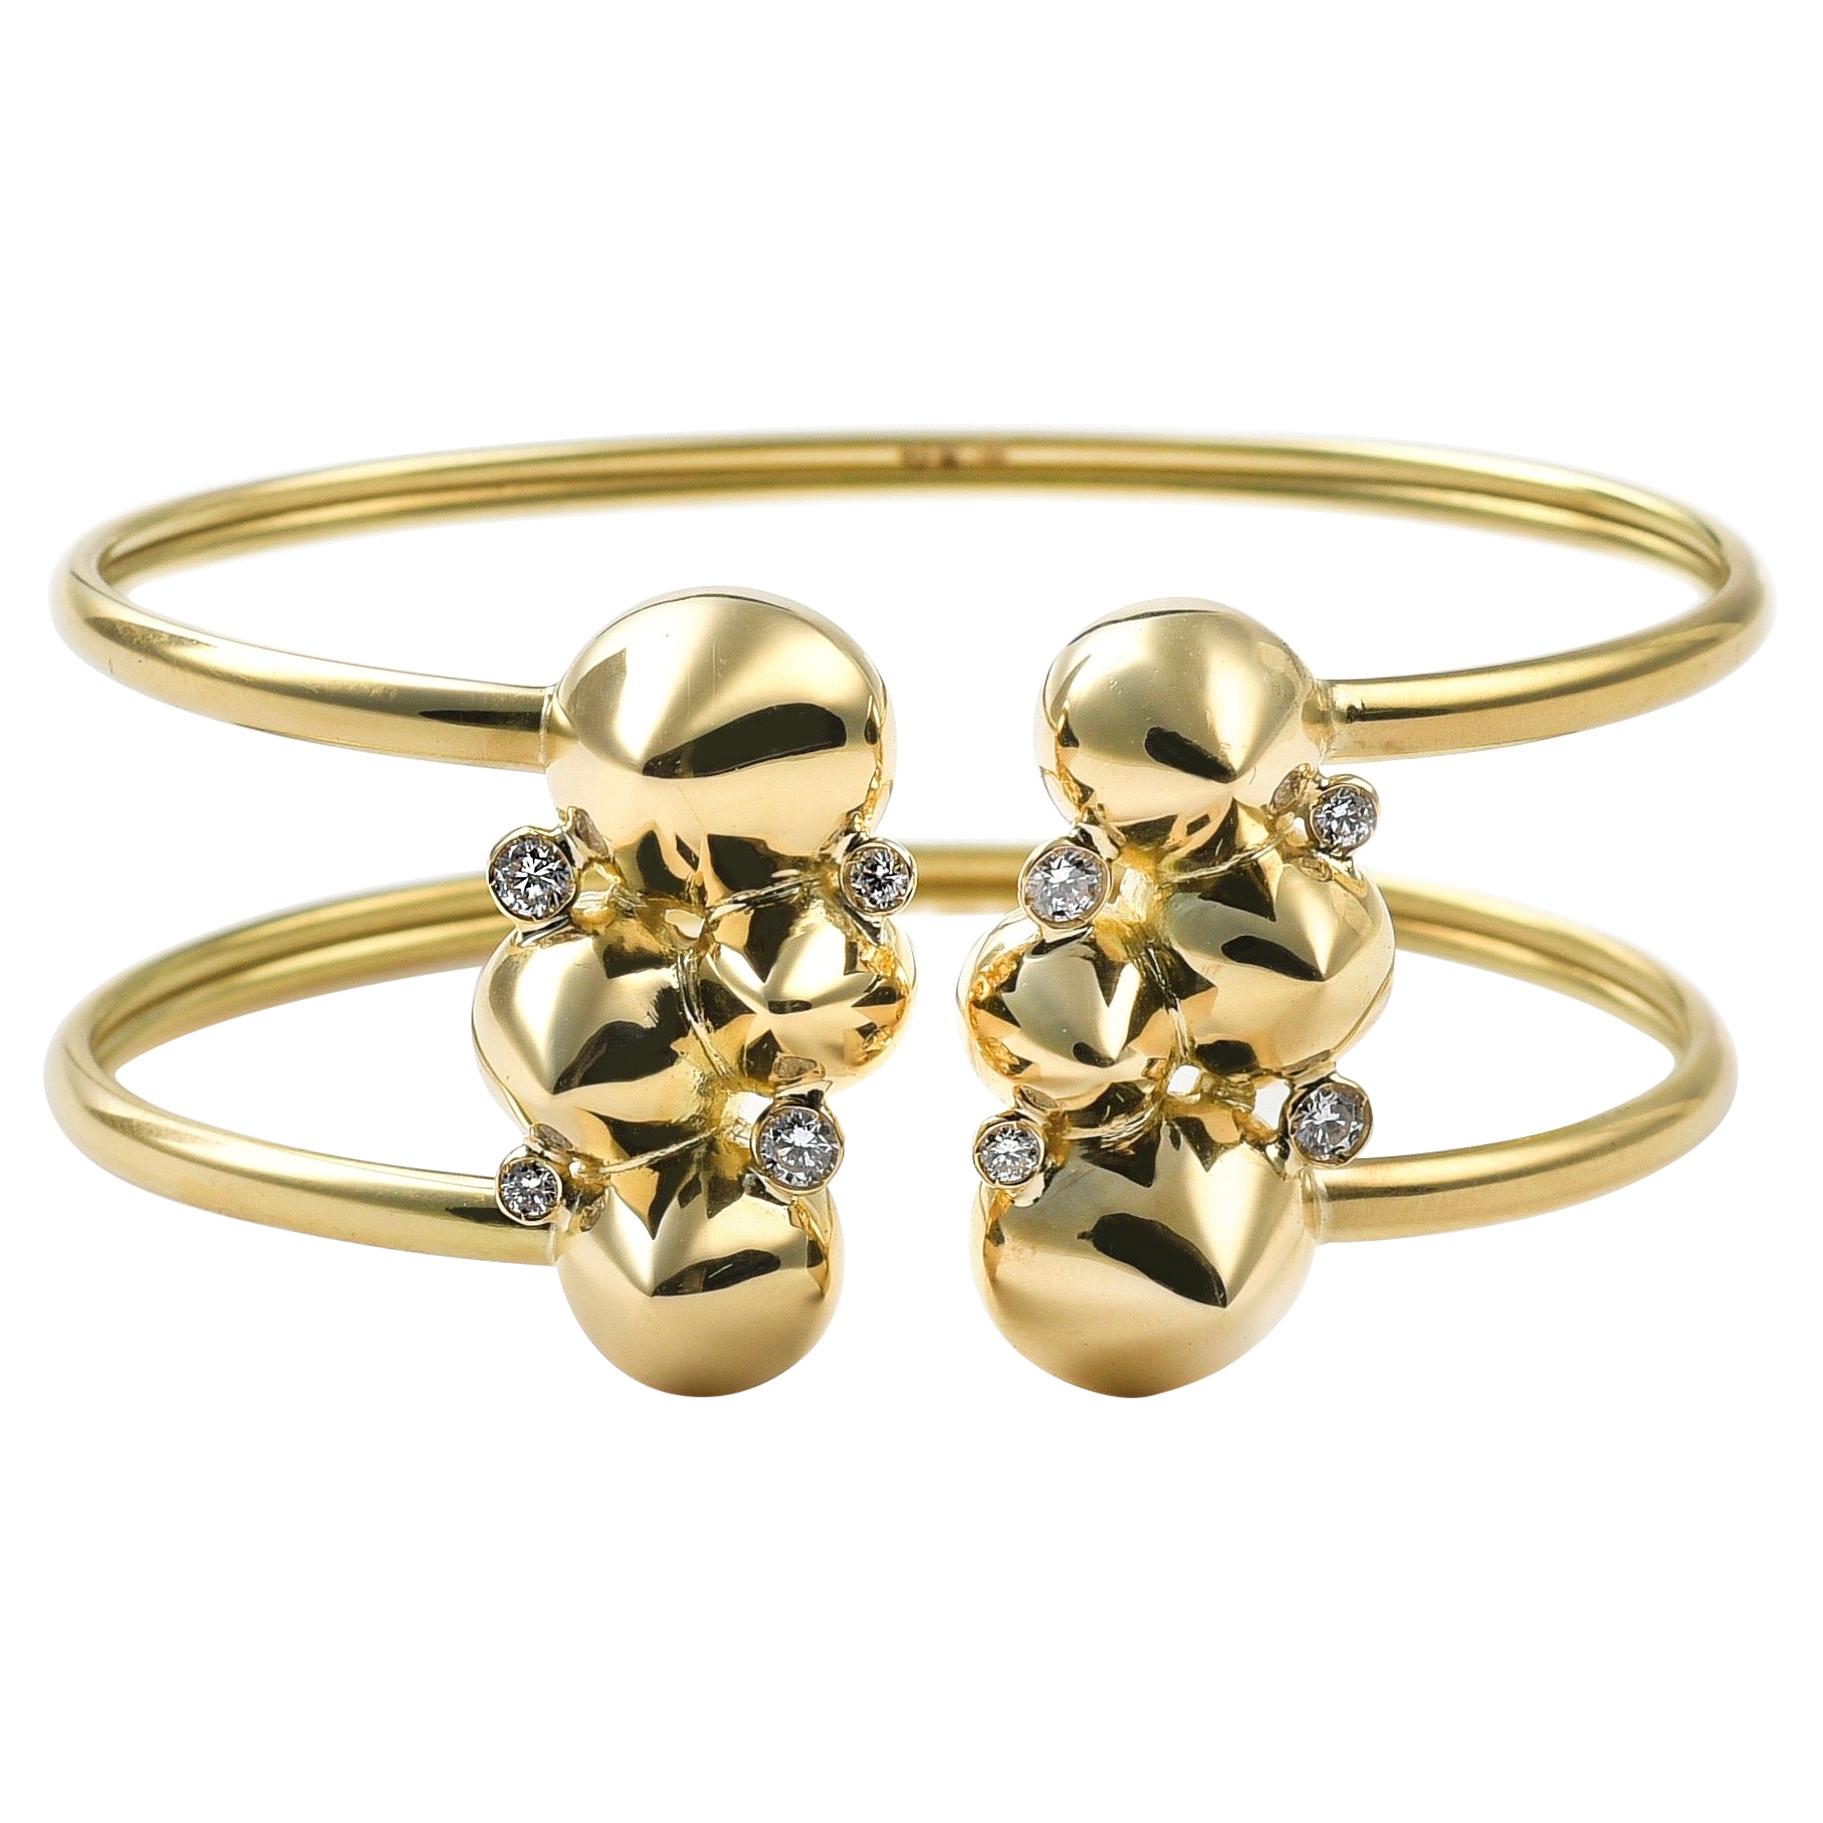 Zeitgenössische flexible Manschette aus 18 Karat Gold und weißen Diamanten, handgeformt, skulptural